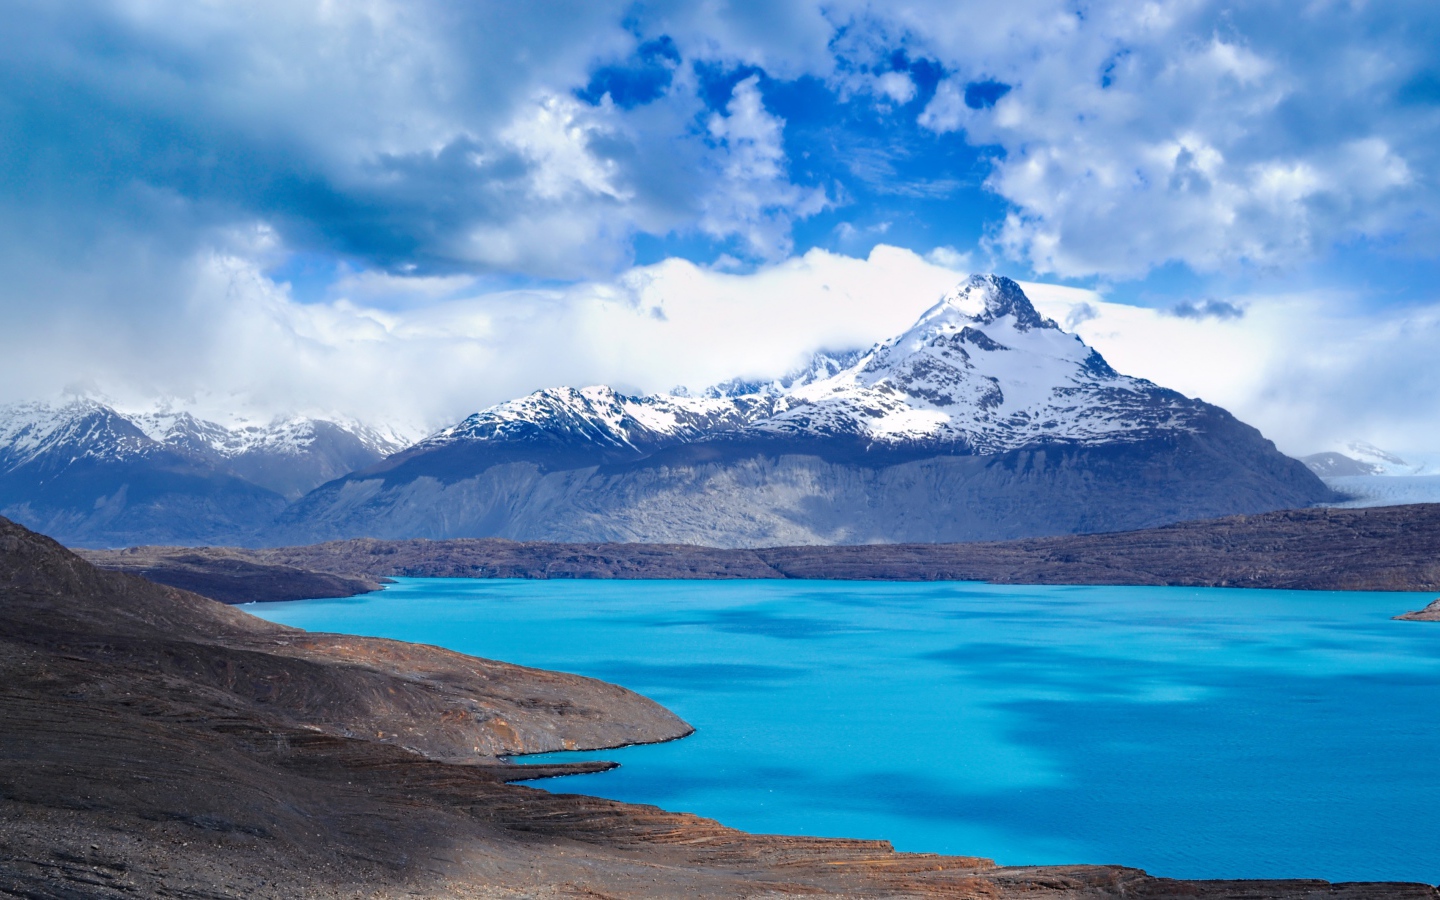 Вид на заснеженную вершину горы у голубого озера 